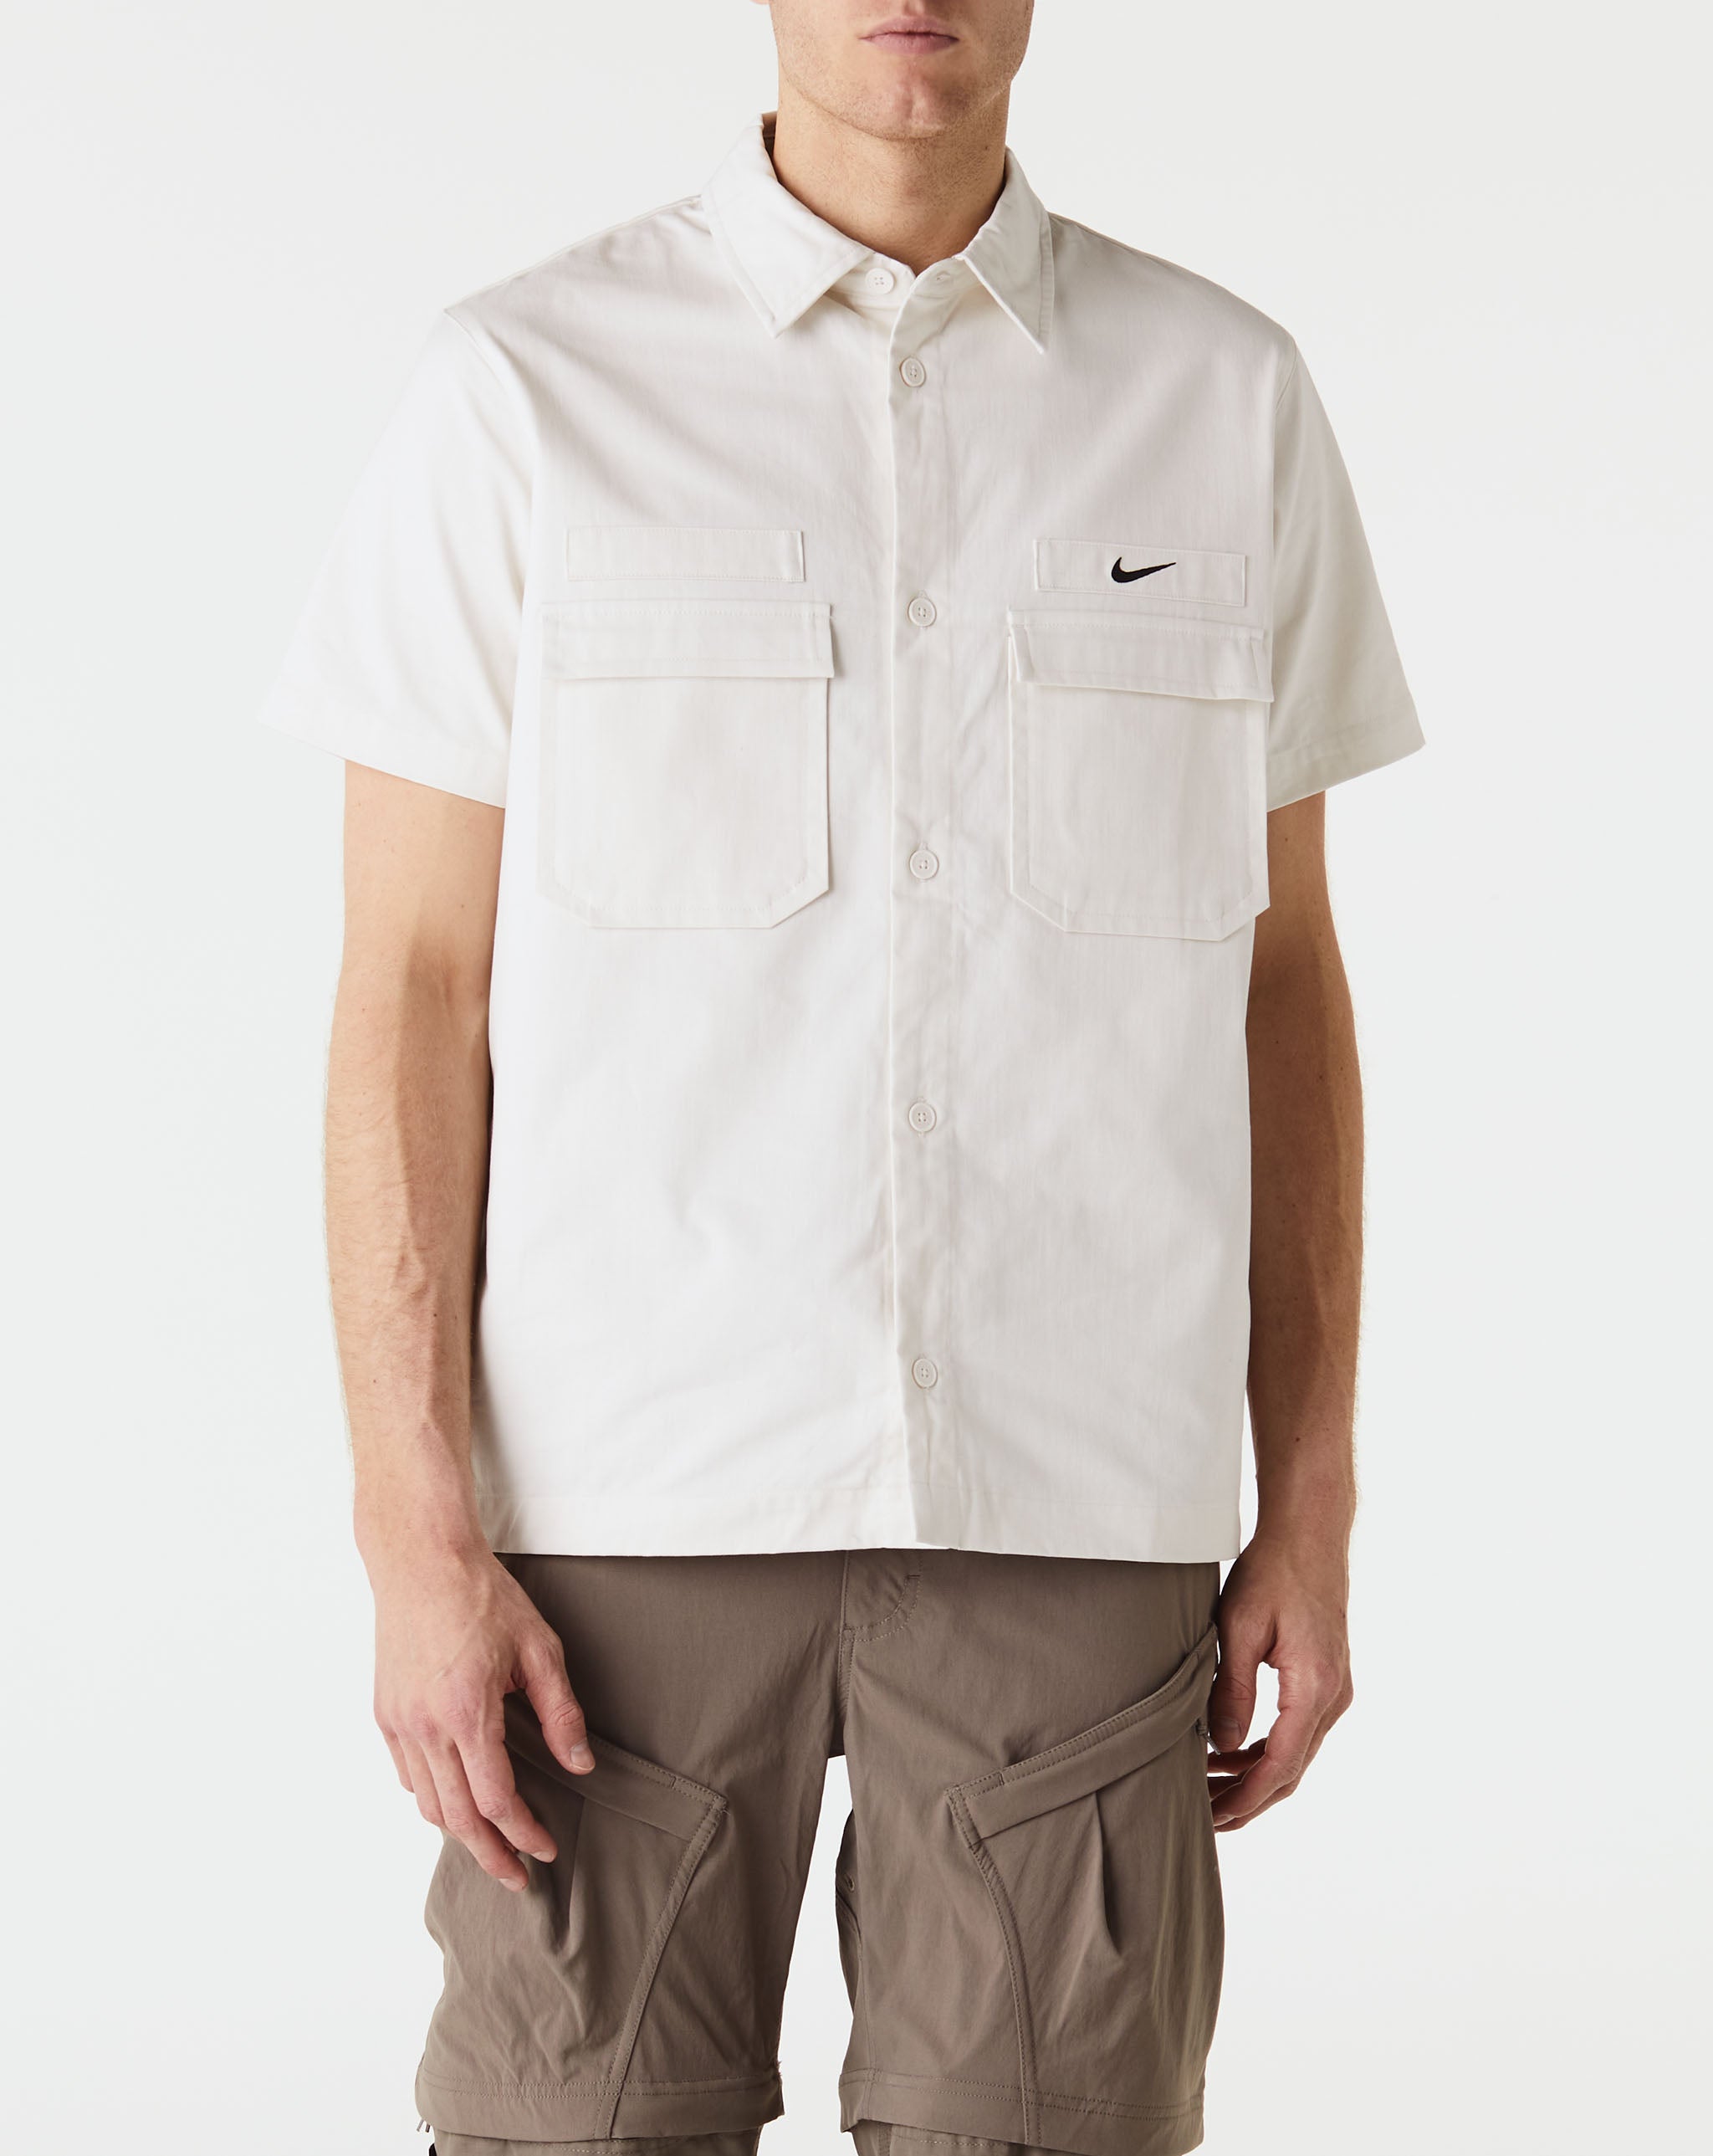 Nike Woven Military Shirt  - Cheap Urlfreeze Jordan outlet